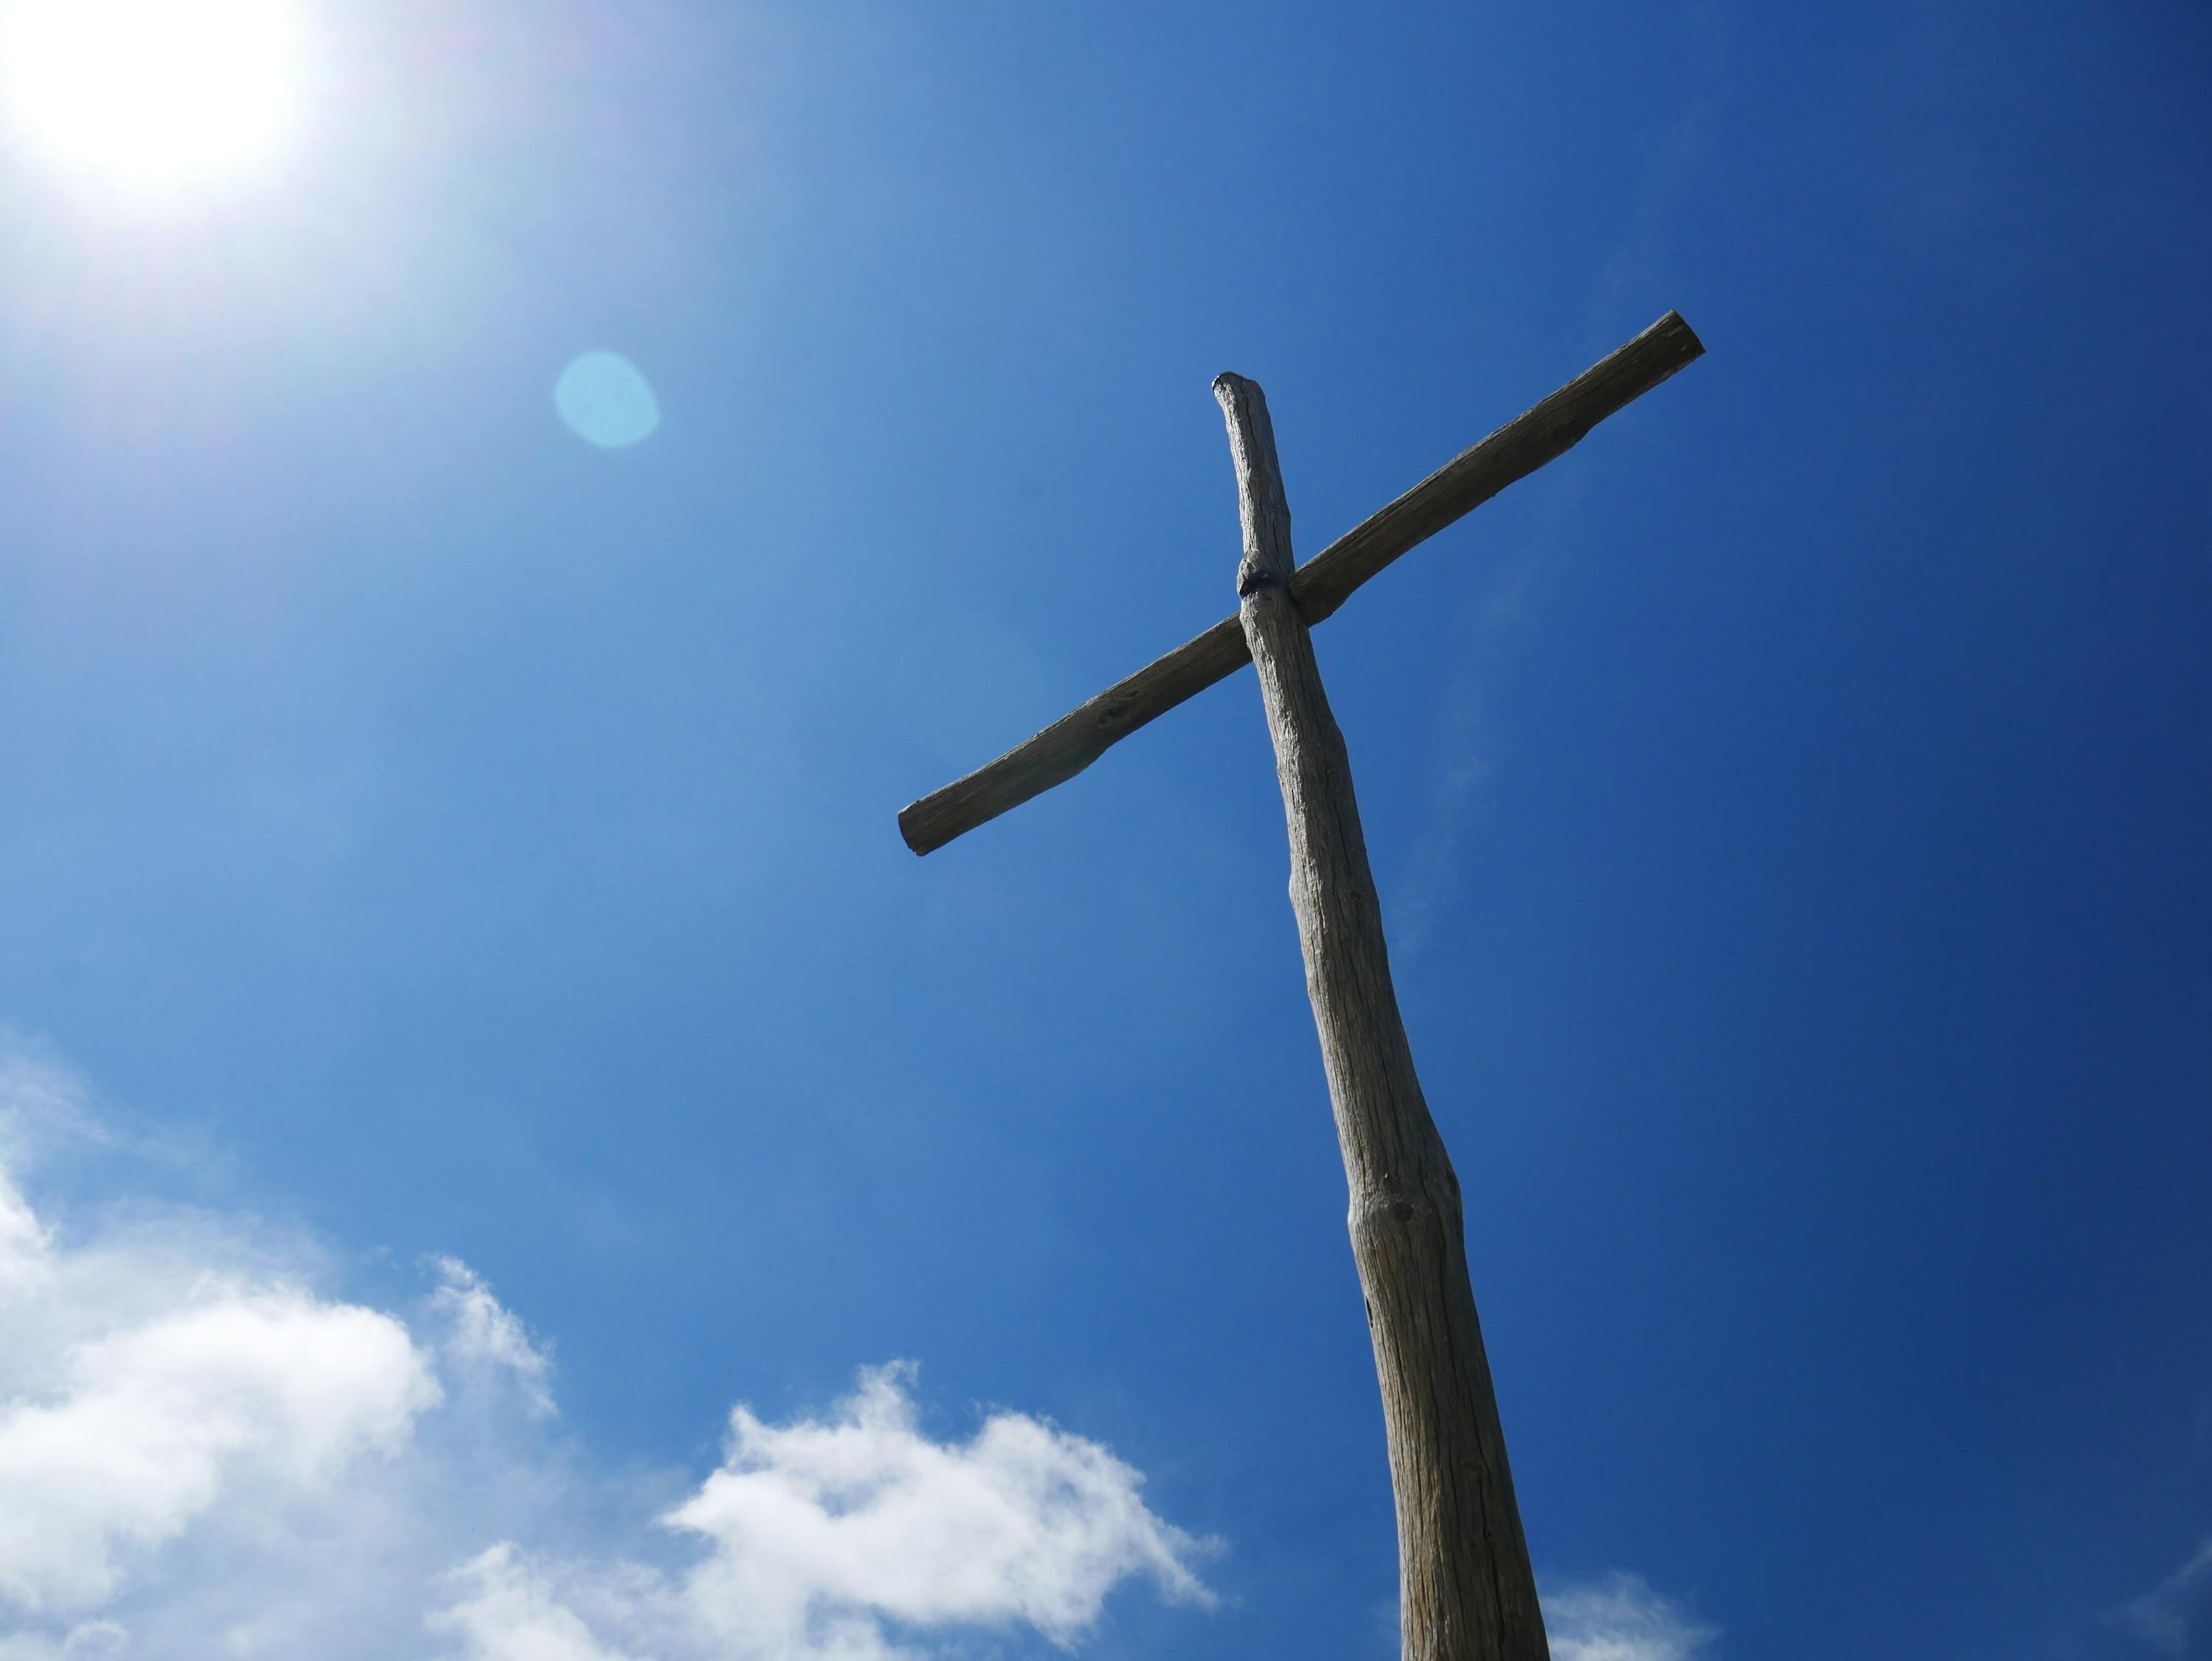 握着十字架的手 耶稣祝福的象征 恳求和信仰的象征 十字的符号 库存图片 - 图片 包括有 基督徒, 相信: 184878157